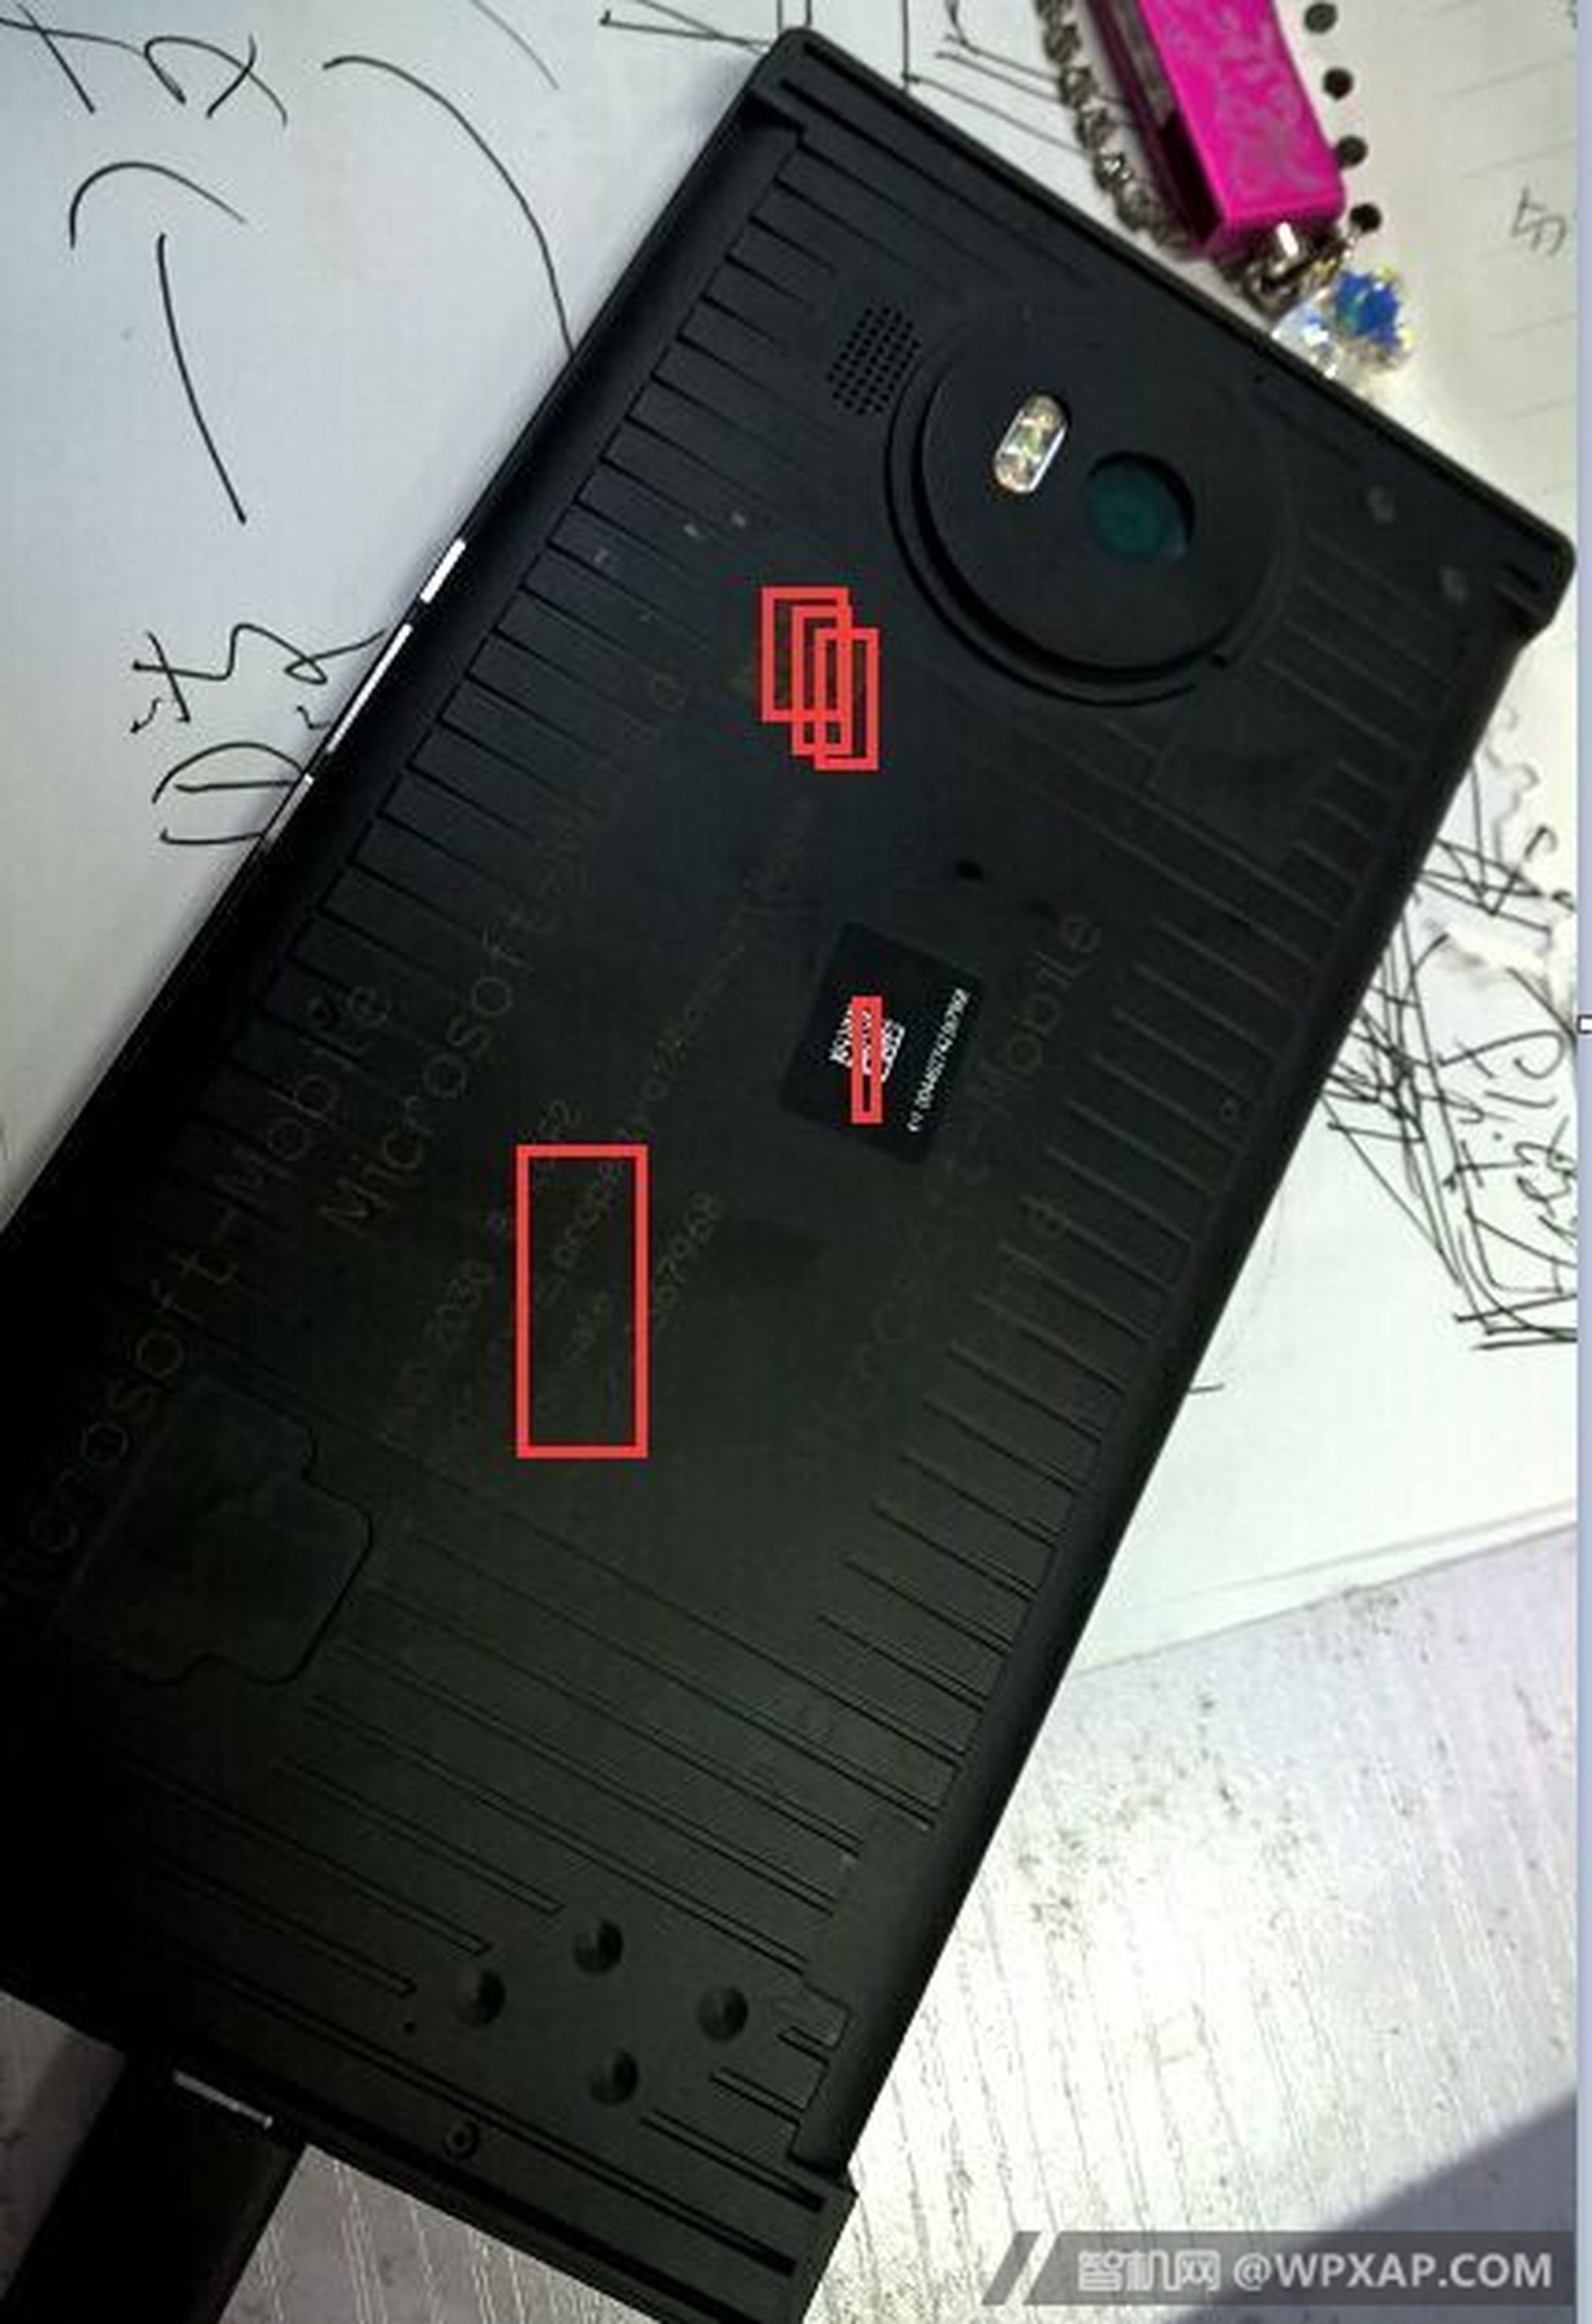 Lumia 950 XL prototype images